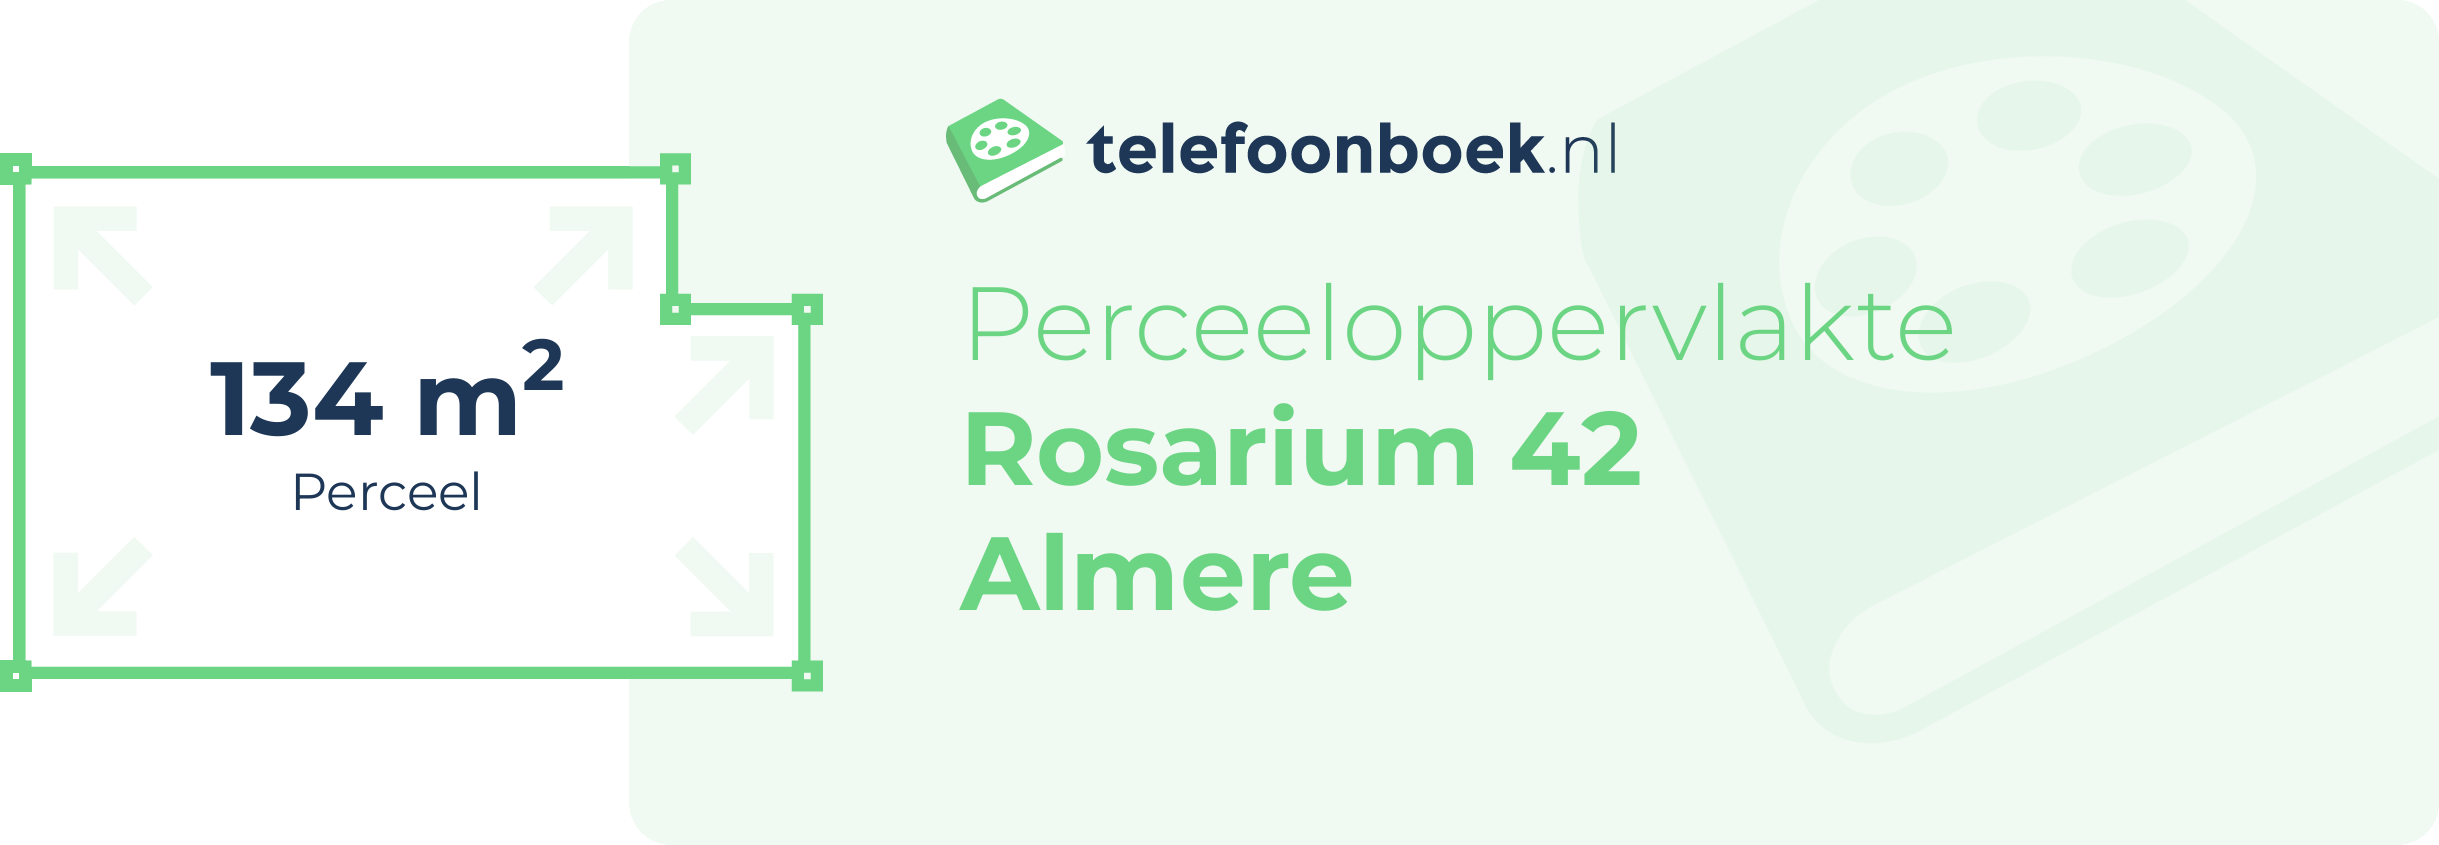 Perceeloppervlakte Rosarium 42 Almere